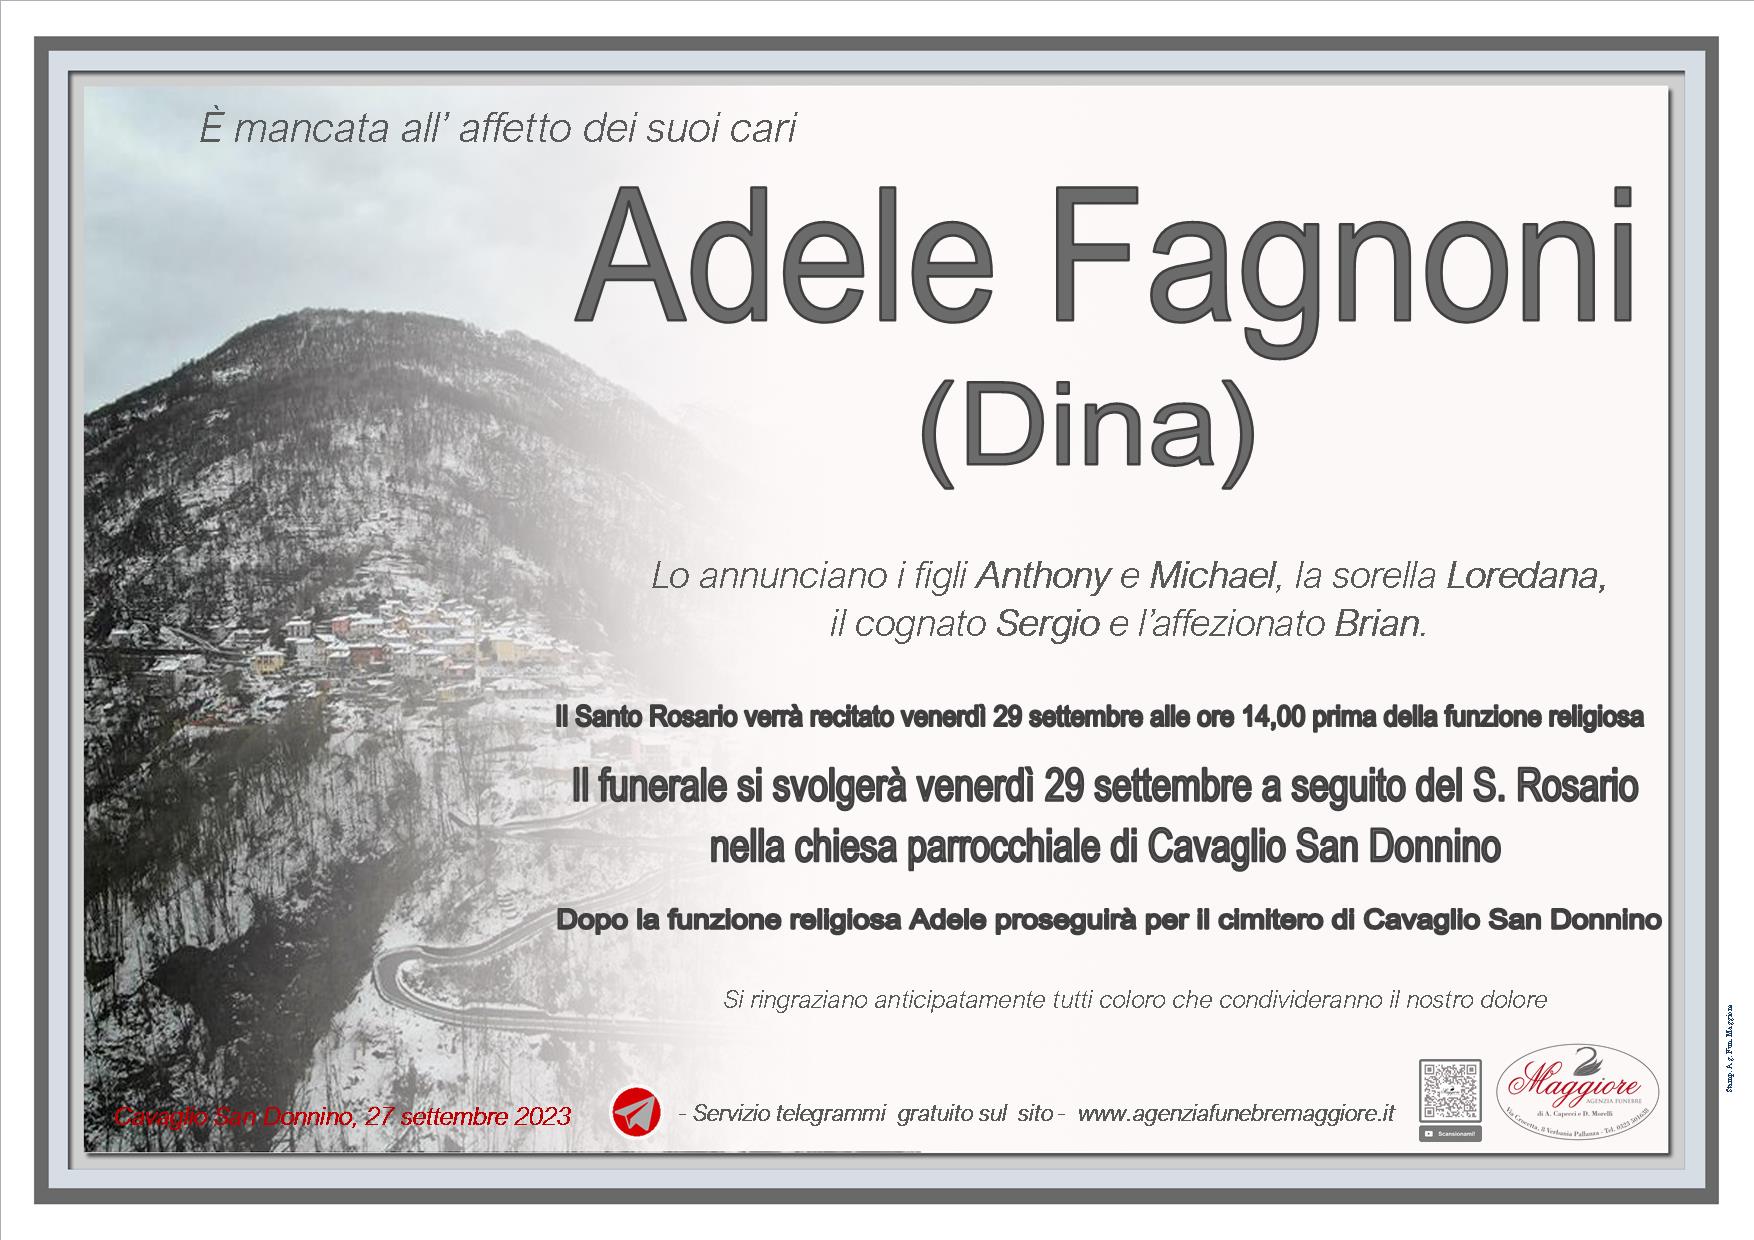 Adele Fagnoni